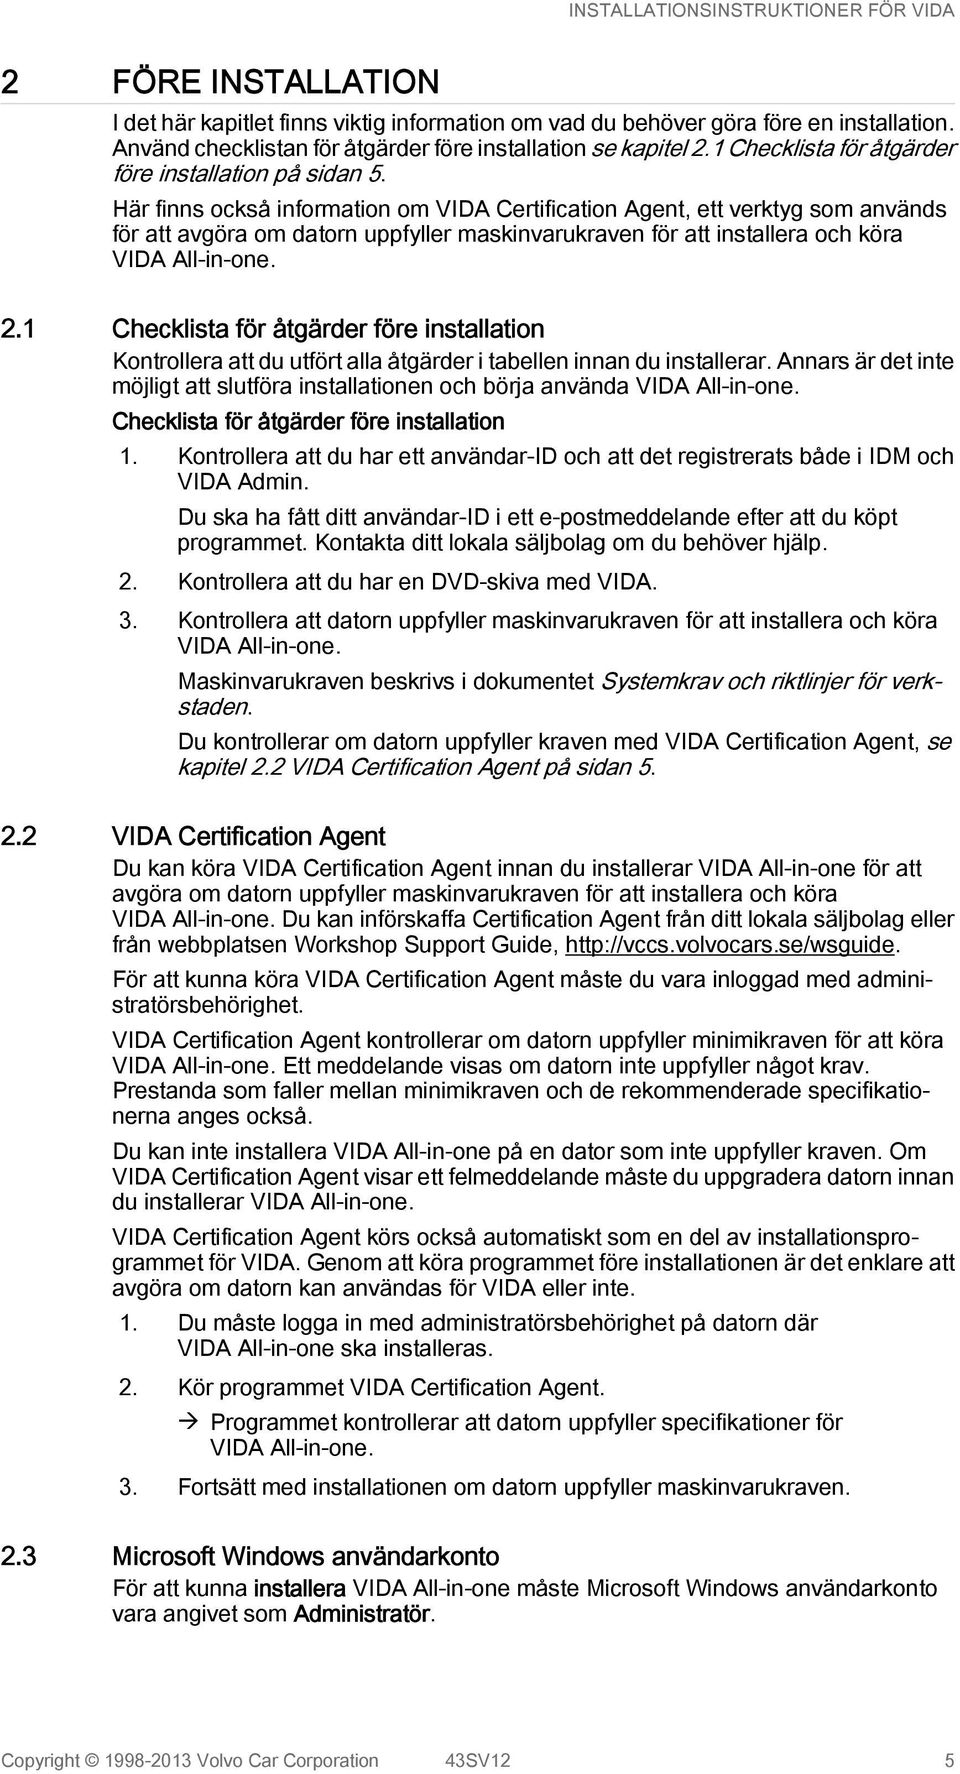 Här finns också information om VIDA Certification Agent, ett verktyg som används för att avgöra om datorn uppfyller maskinvarukraven för att installera och köra VIDA All-in-one. 2.